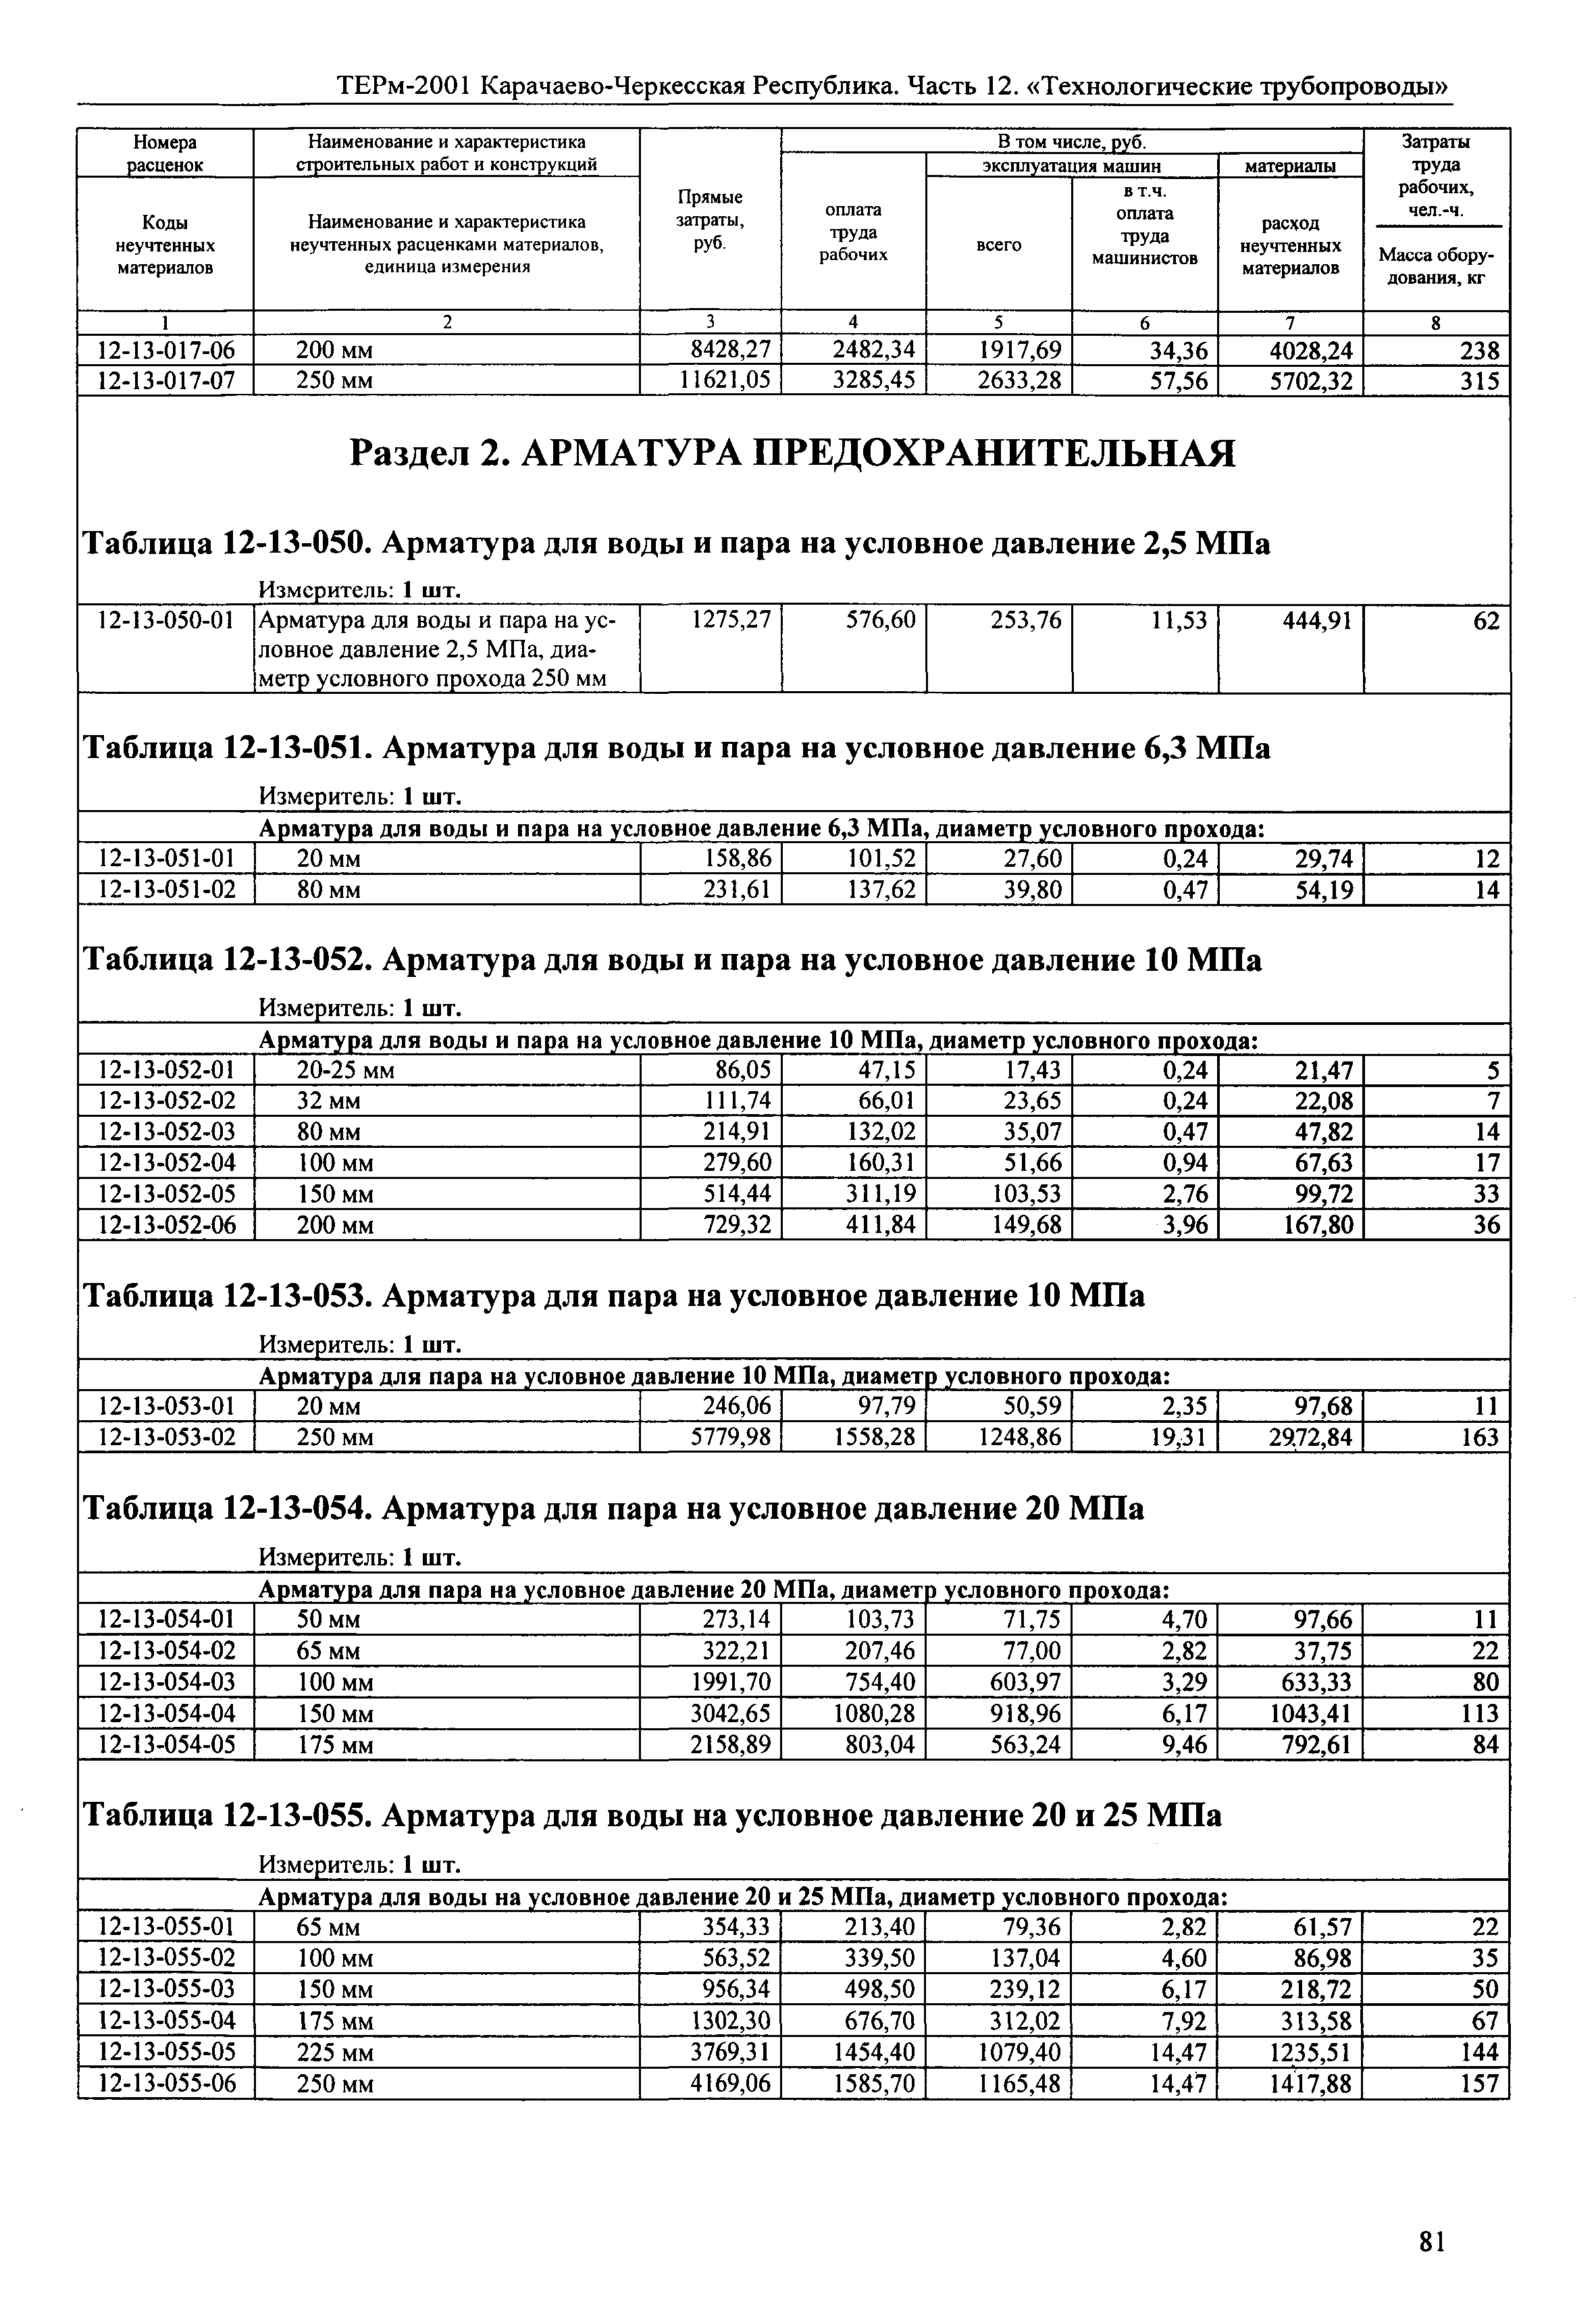 ТЕРм Карачаево-Черкесская Республика 12-2001